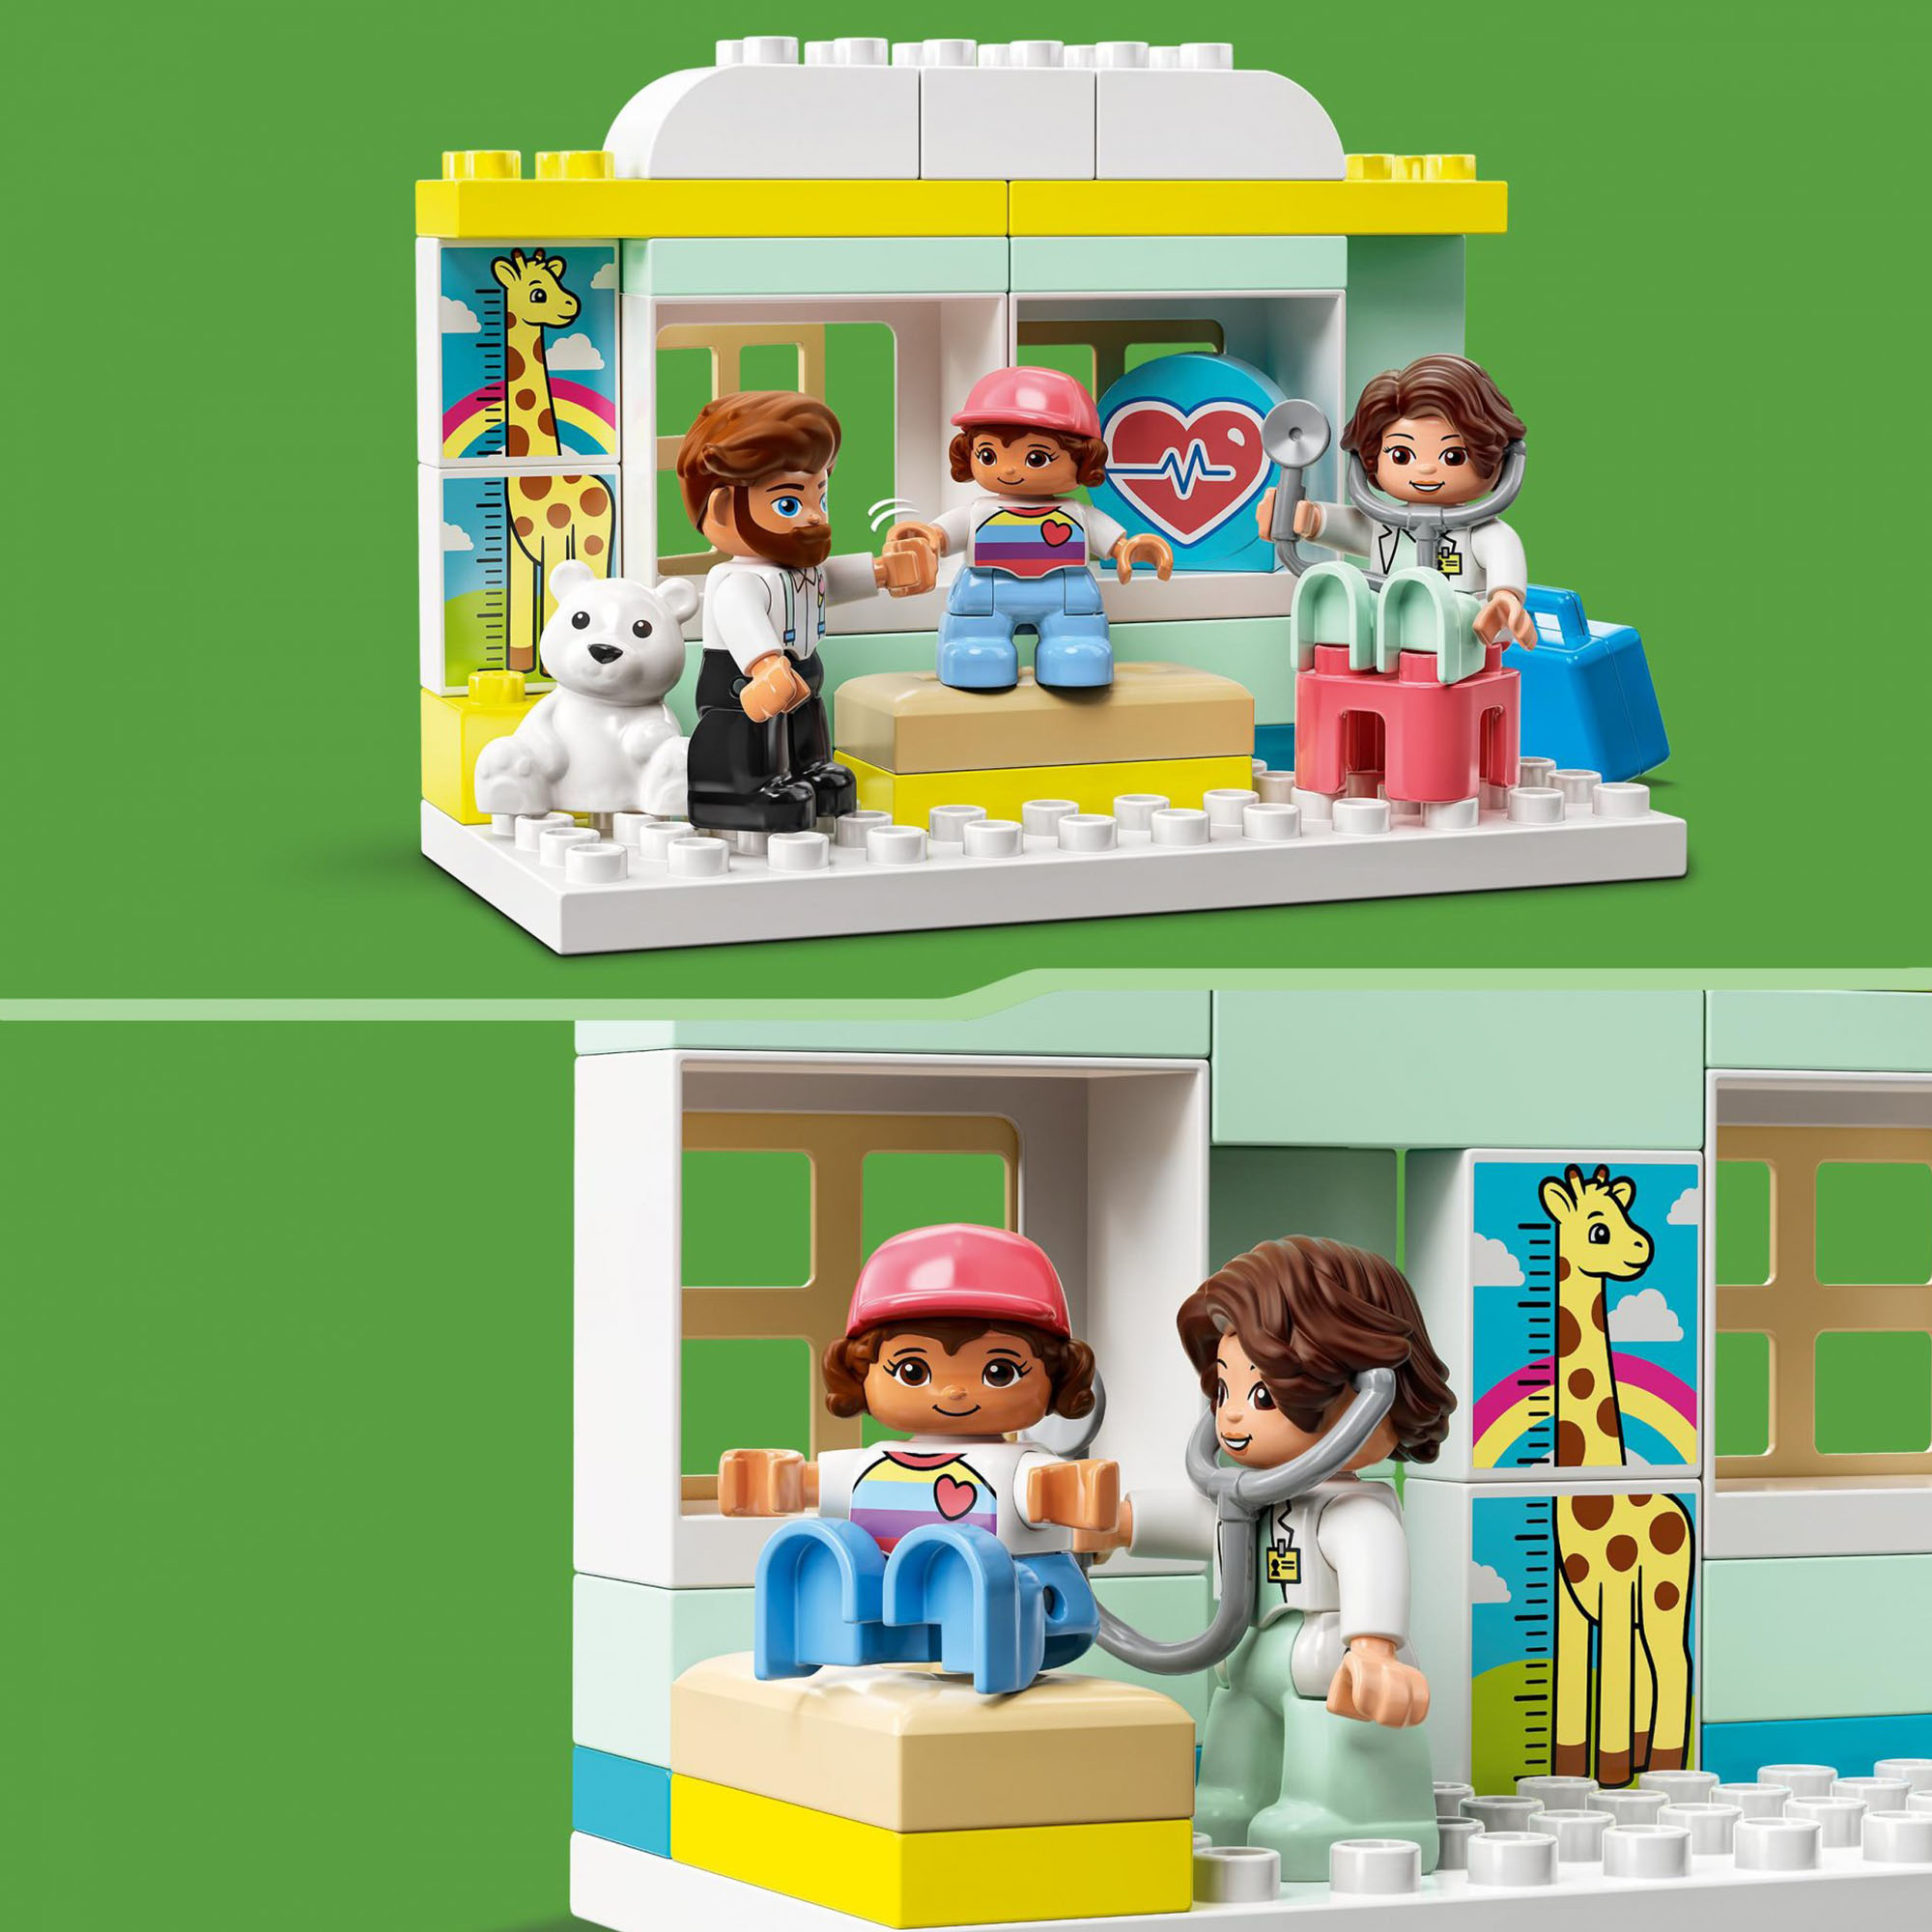 LEGO DUPLO Visita dal Dottore, Giochi Educativi per l'Apprendimento dei Bambini 10968, , large